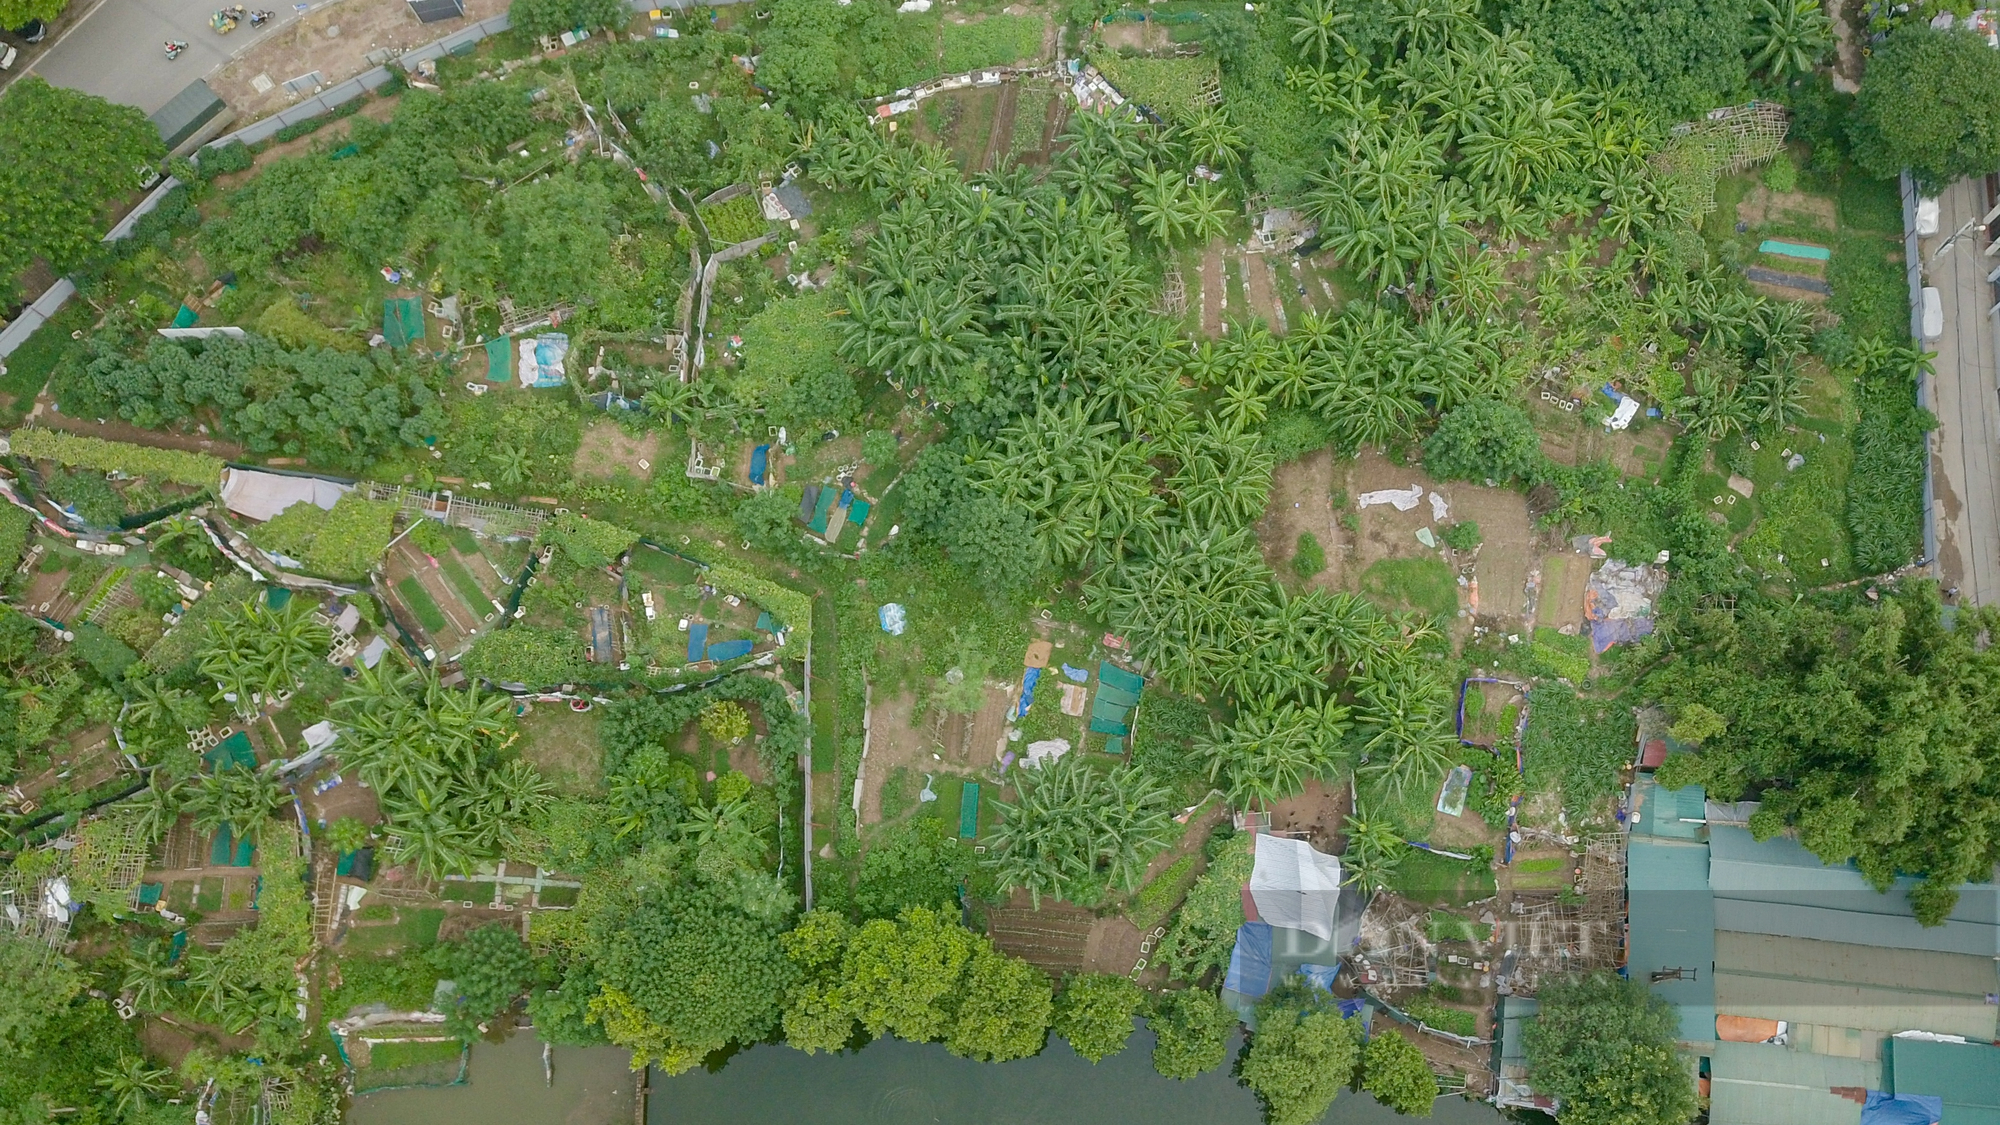 Cận cảnh các khu đất trường học, cây xanh ở Hà Nội bị quy hoạch vào nghĩa trang ở Thủ đô  - Ảnh 4.